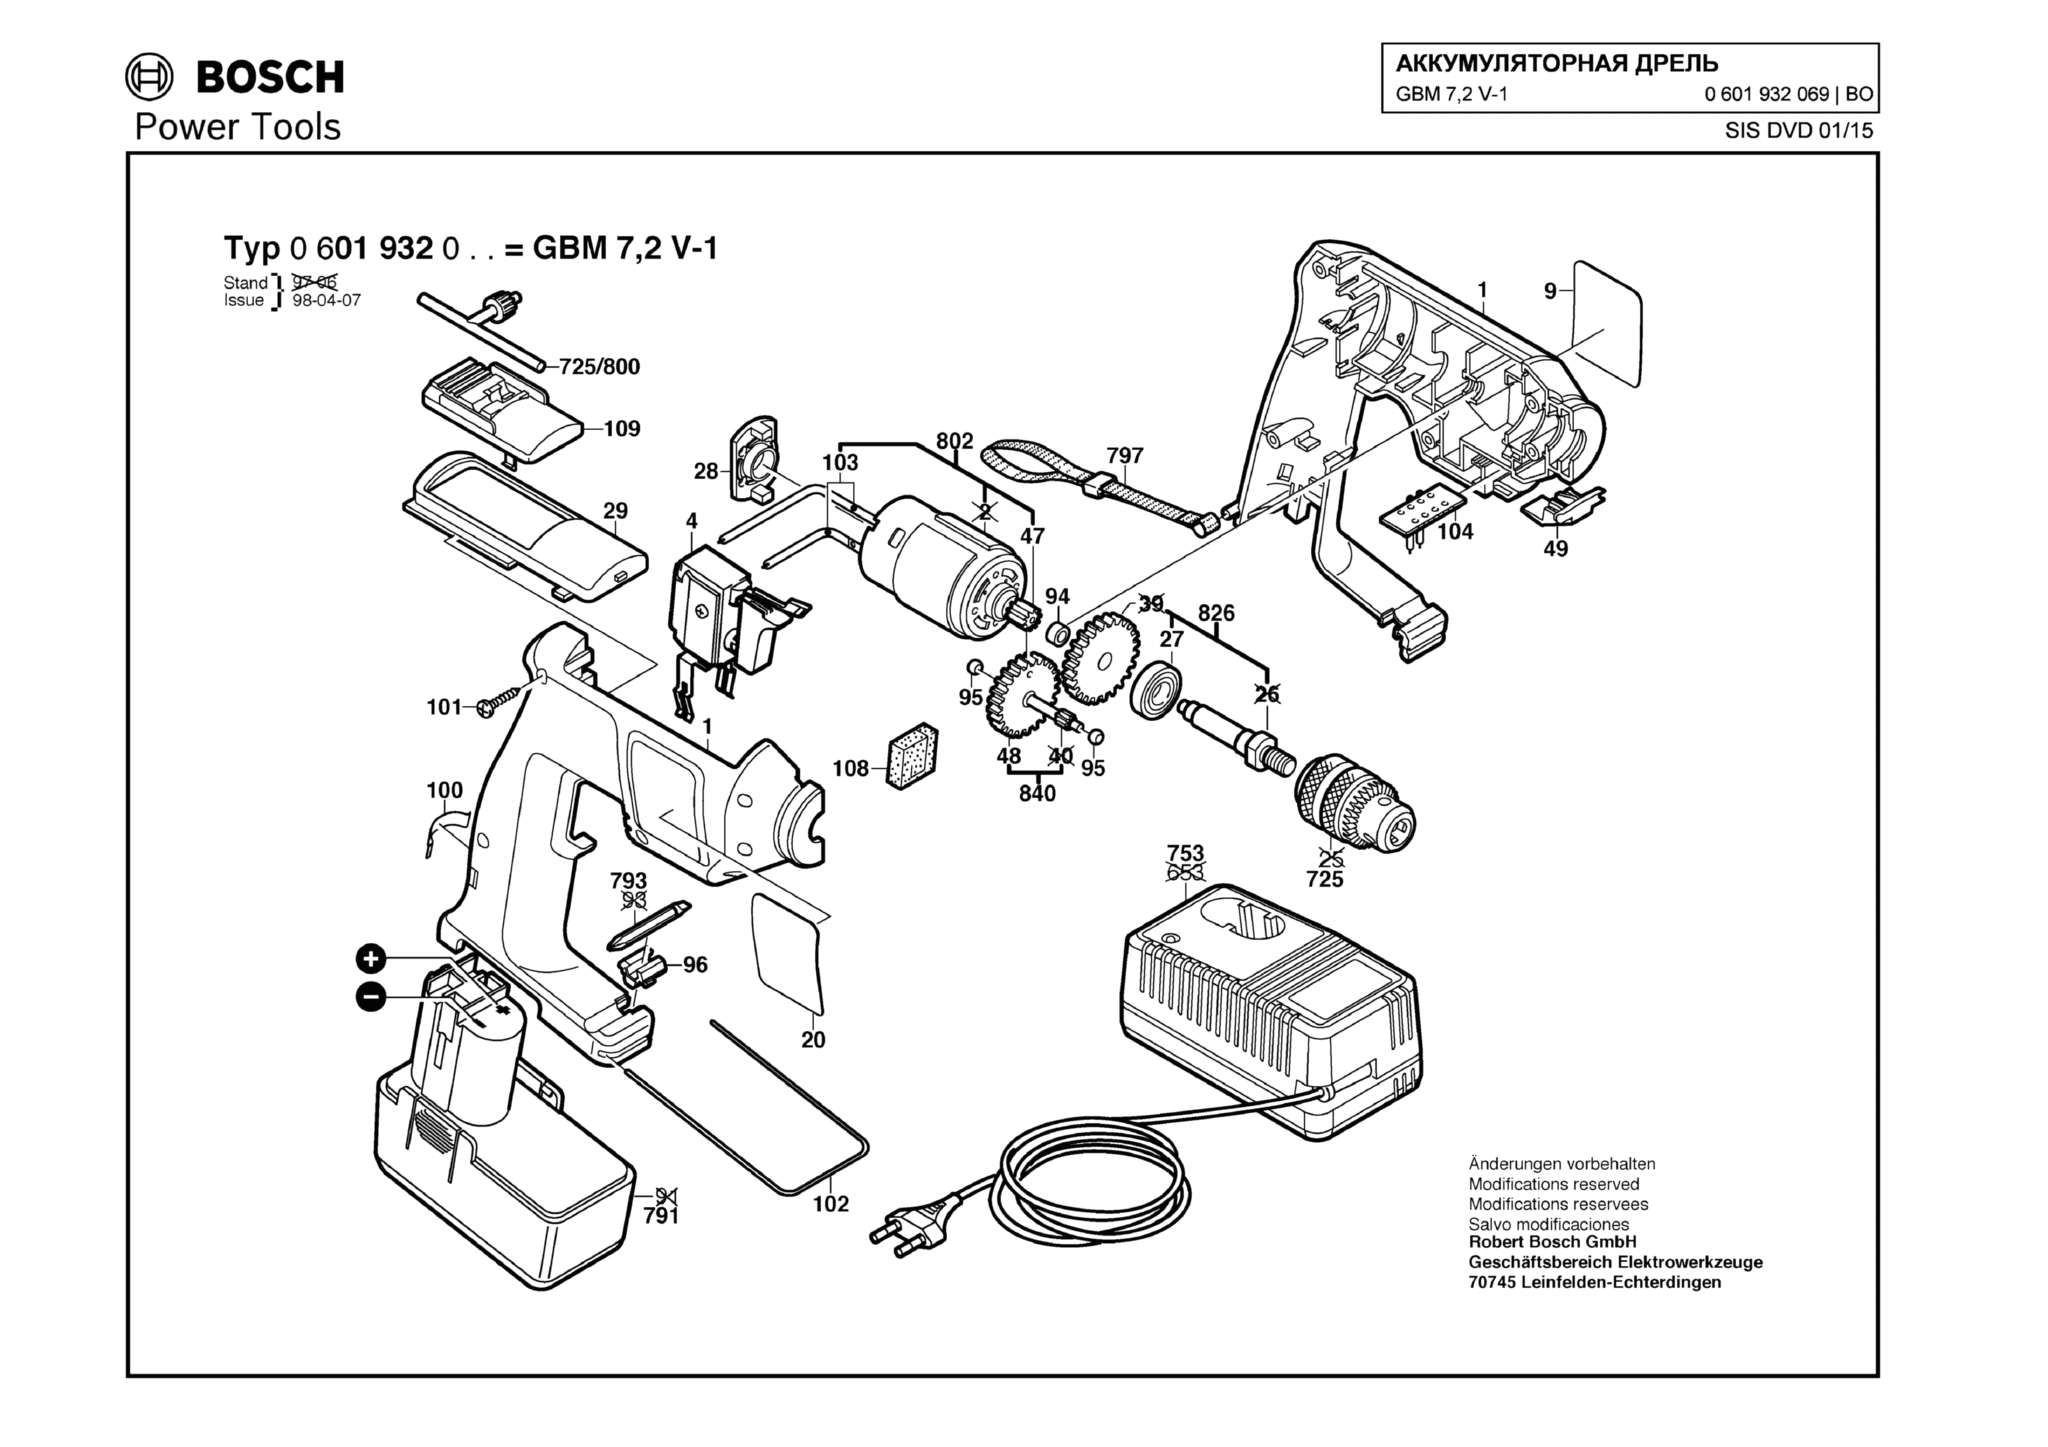 Запчасти, схема и деталировка Bosch GBM 7,2 V-1 (ТИП 0601932069)